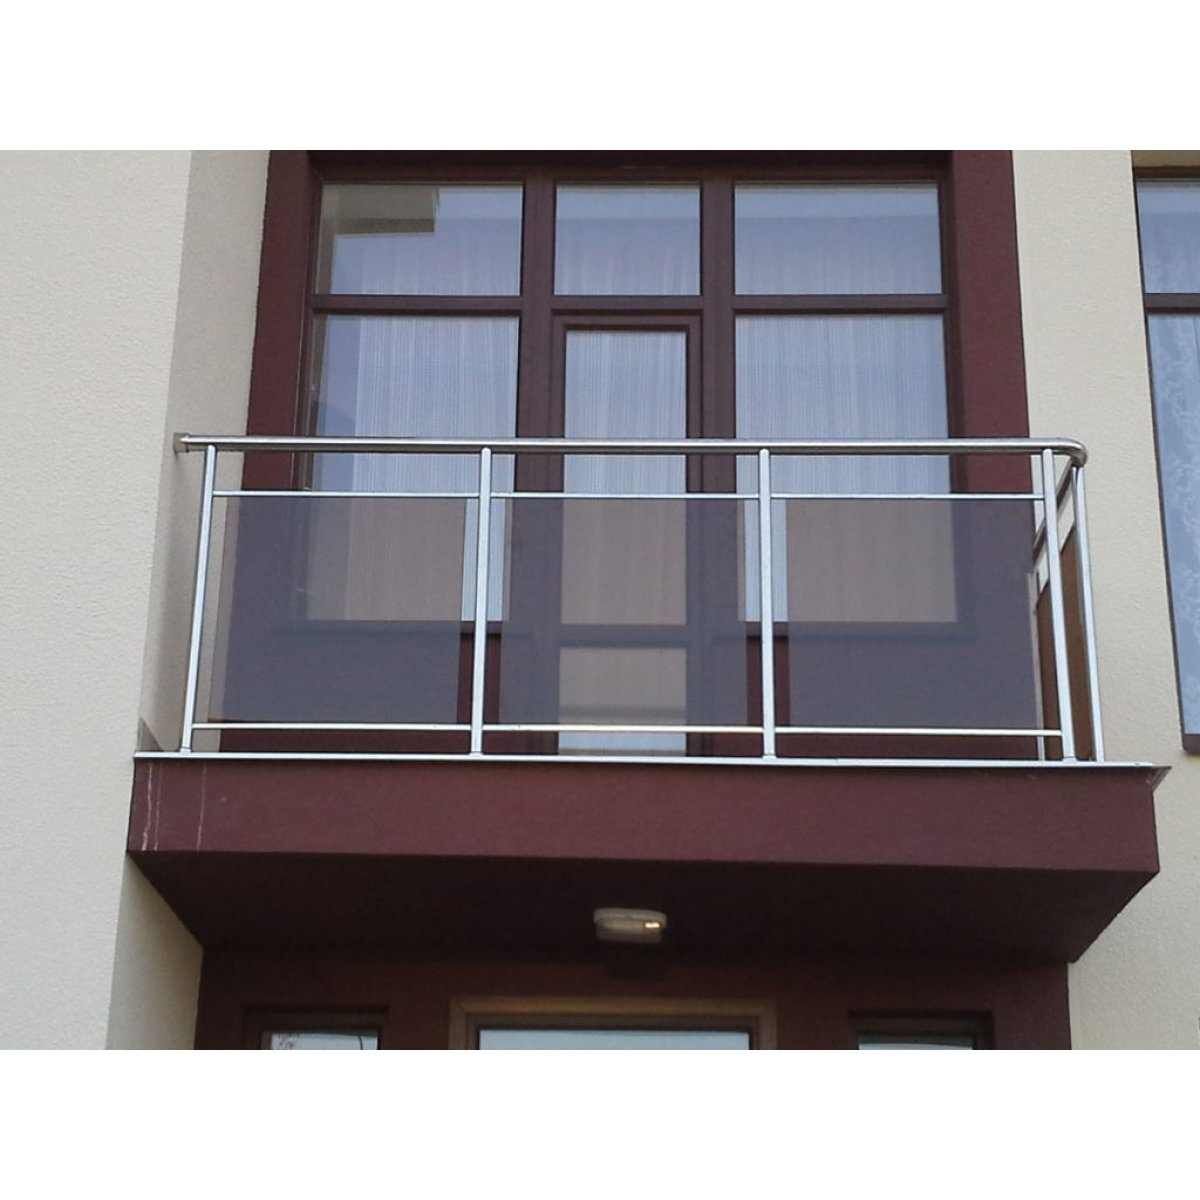 Ограждения из нержавеющей стали и стекла для балкона по индивидуальным размерам